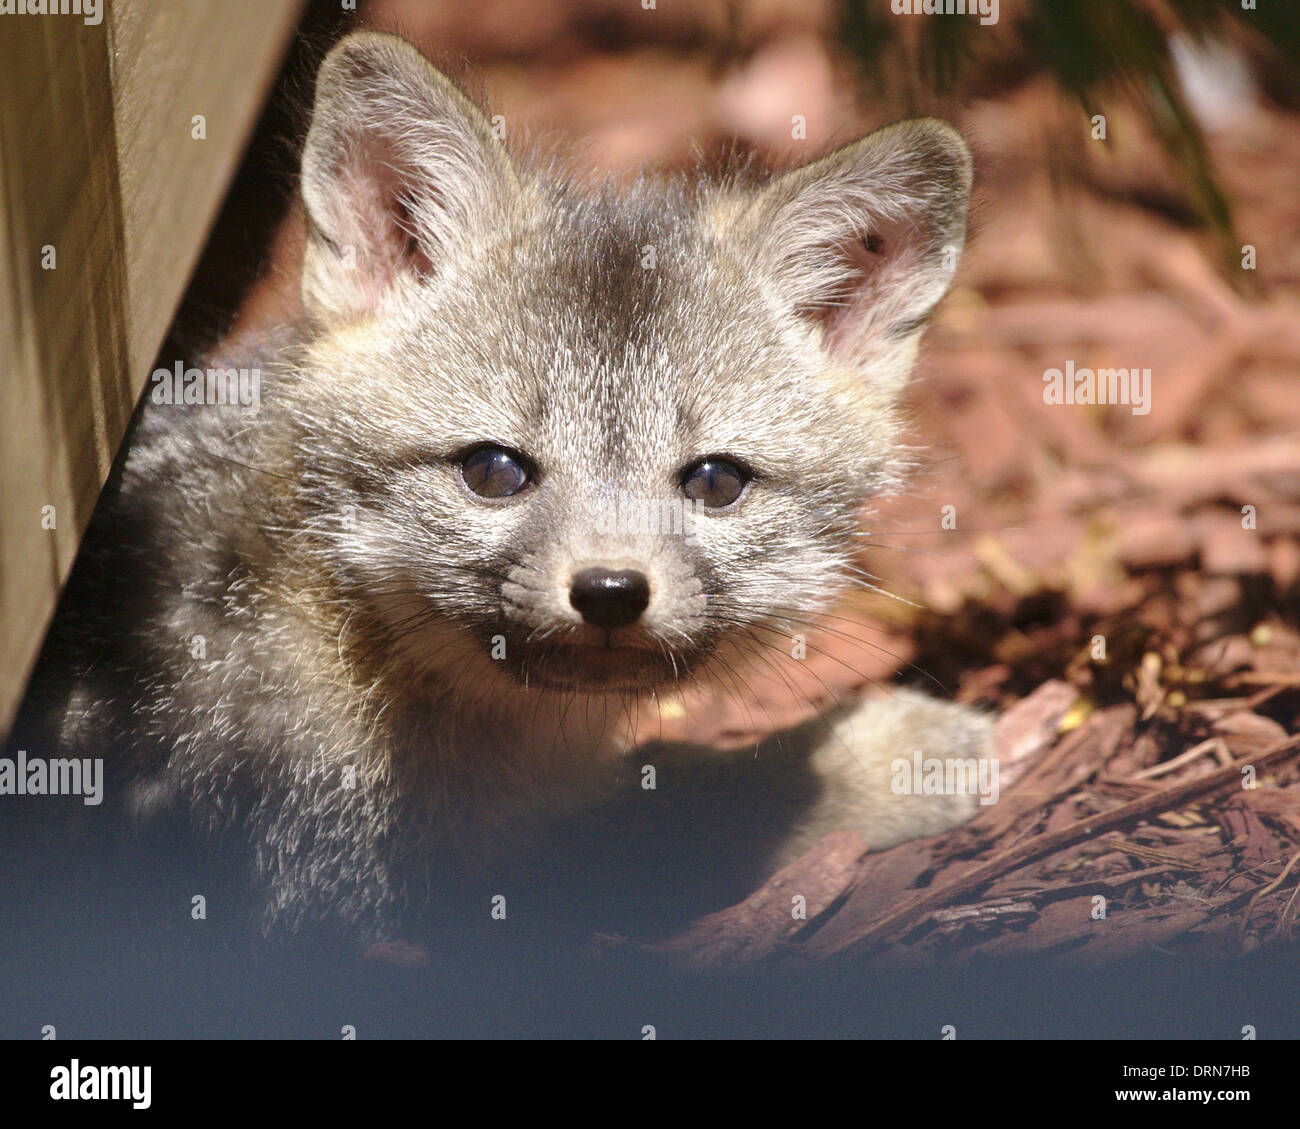 Tête portrait d'un kit fox brown sortant de dessous d'une terrasse en bois, entouré de paillis rouge. Banque D'Images